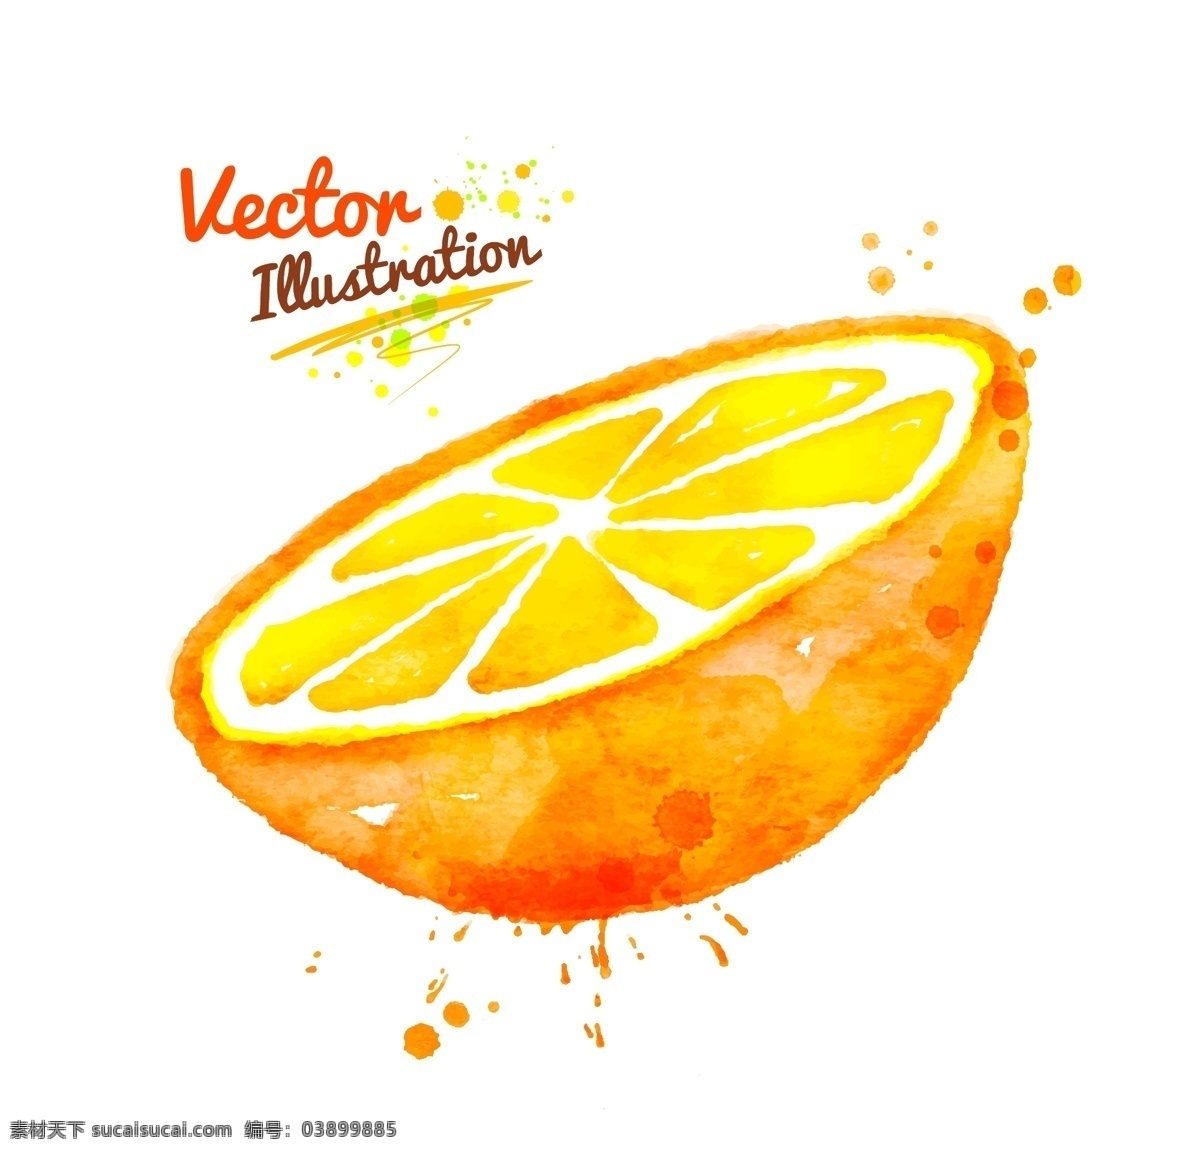 半 颗 橙子 创意 喷溅 水彩 墨迹 玉米 蔬菜 矢量 黄色 插画 水墨 手绘 墨点